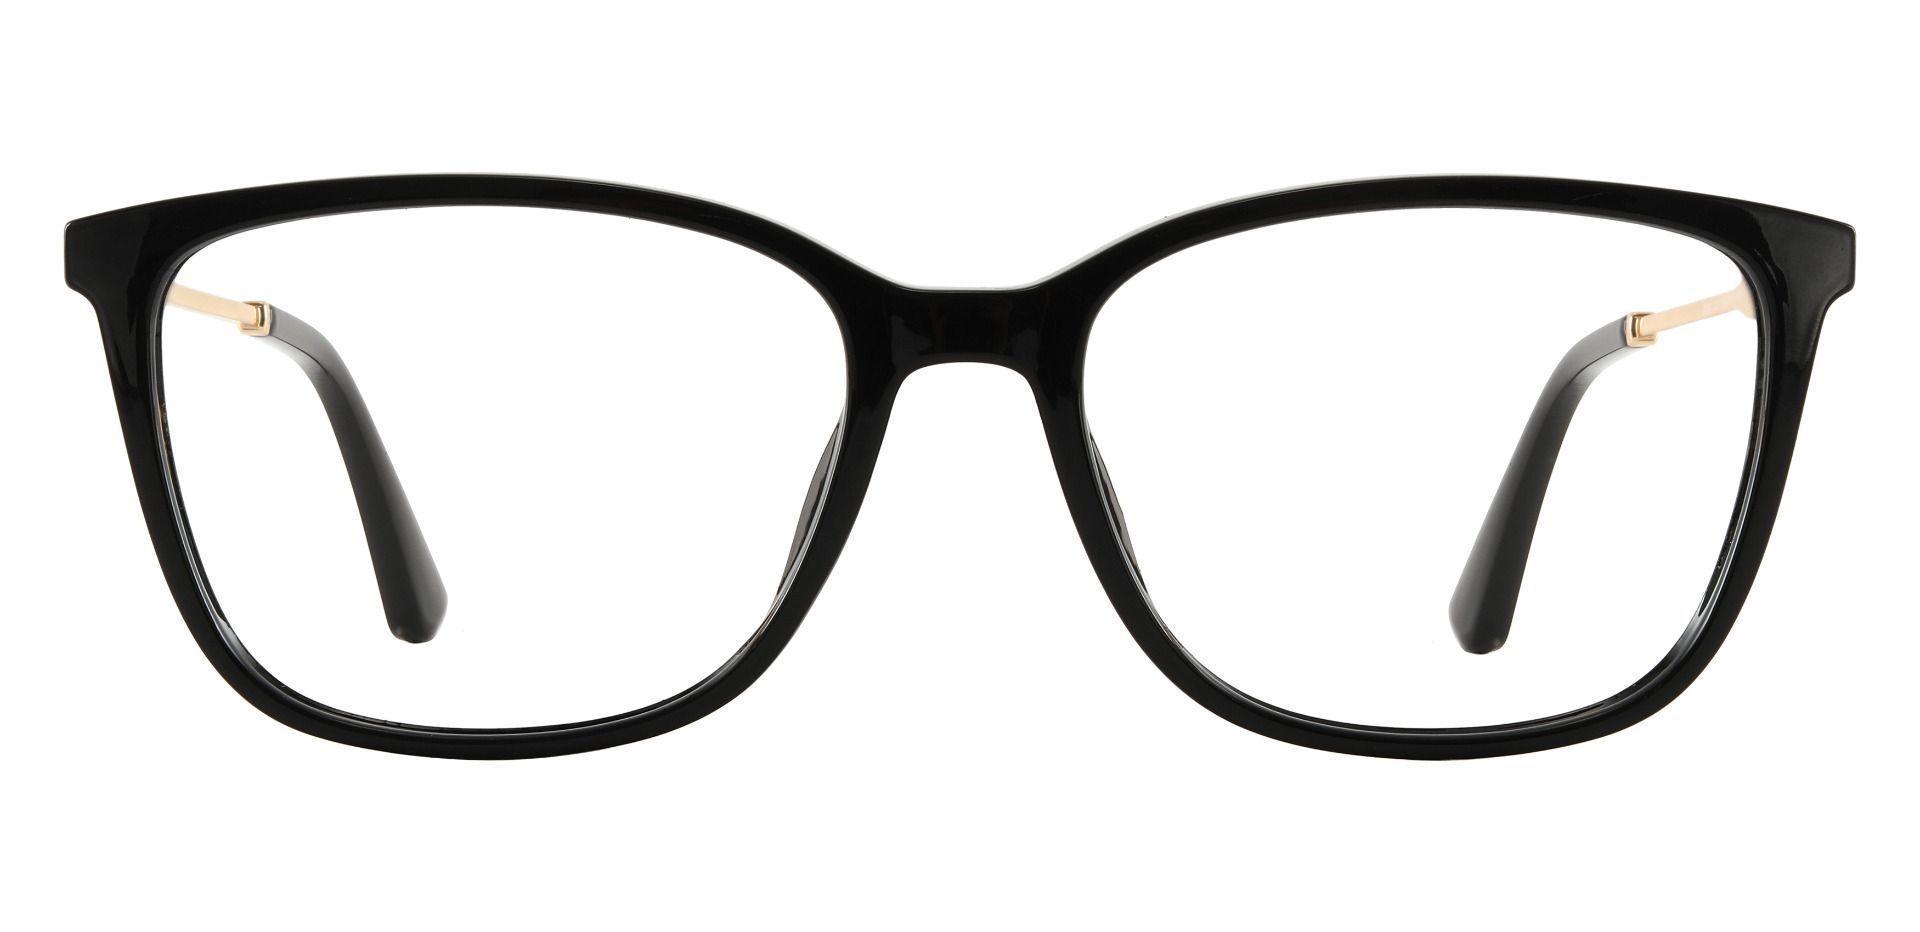 Miami Rectangle Prescription Glasses - Black